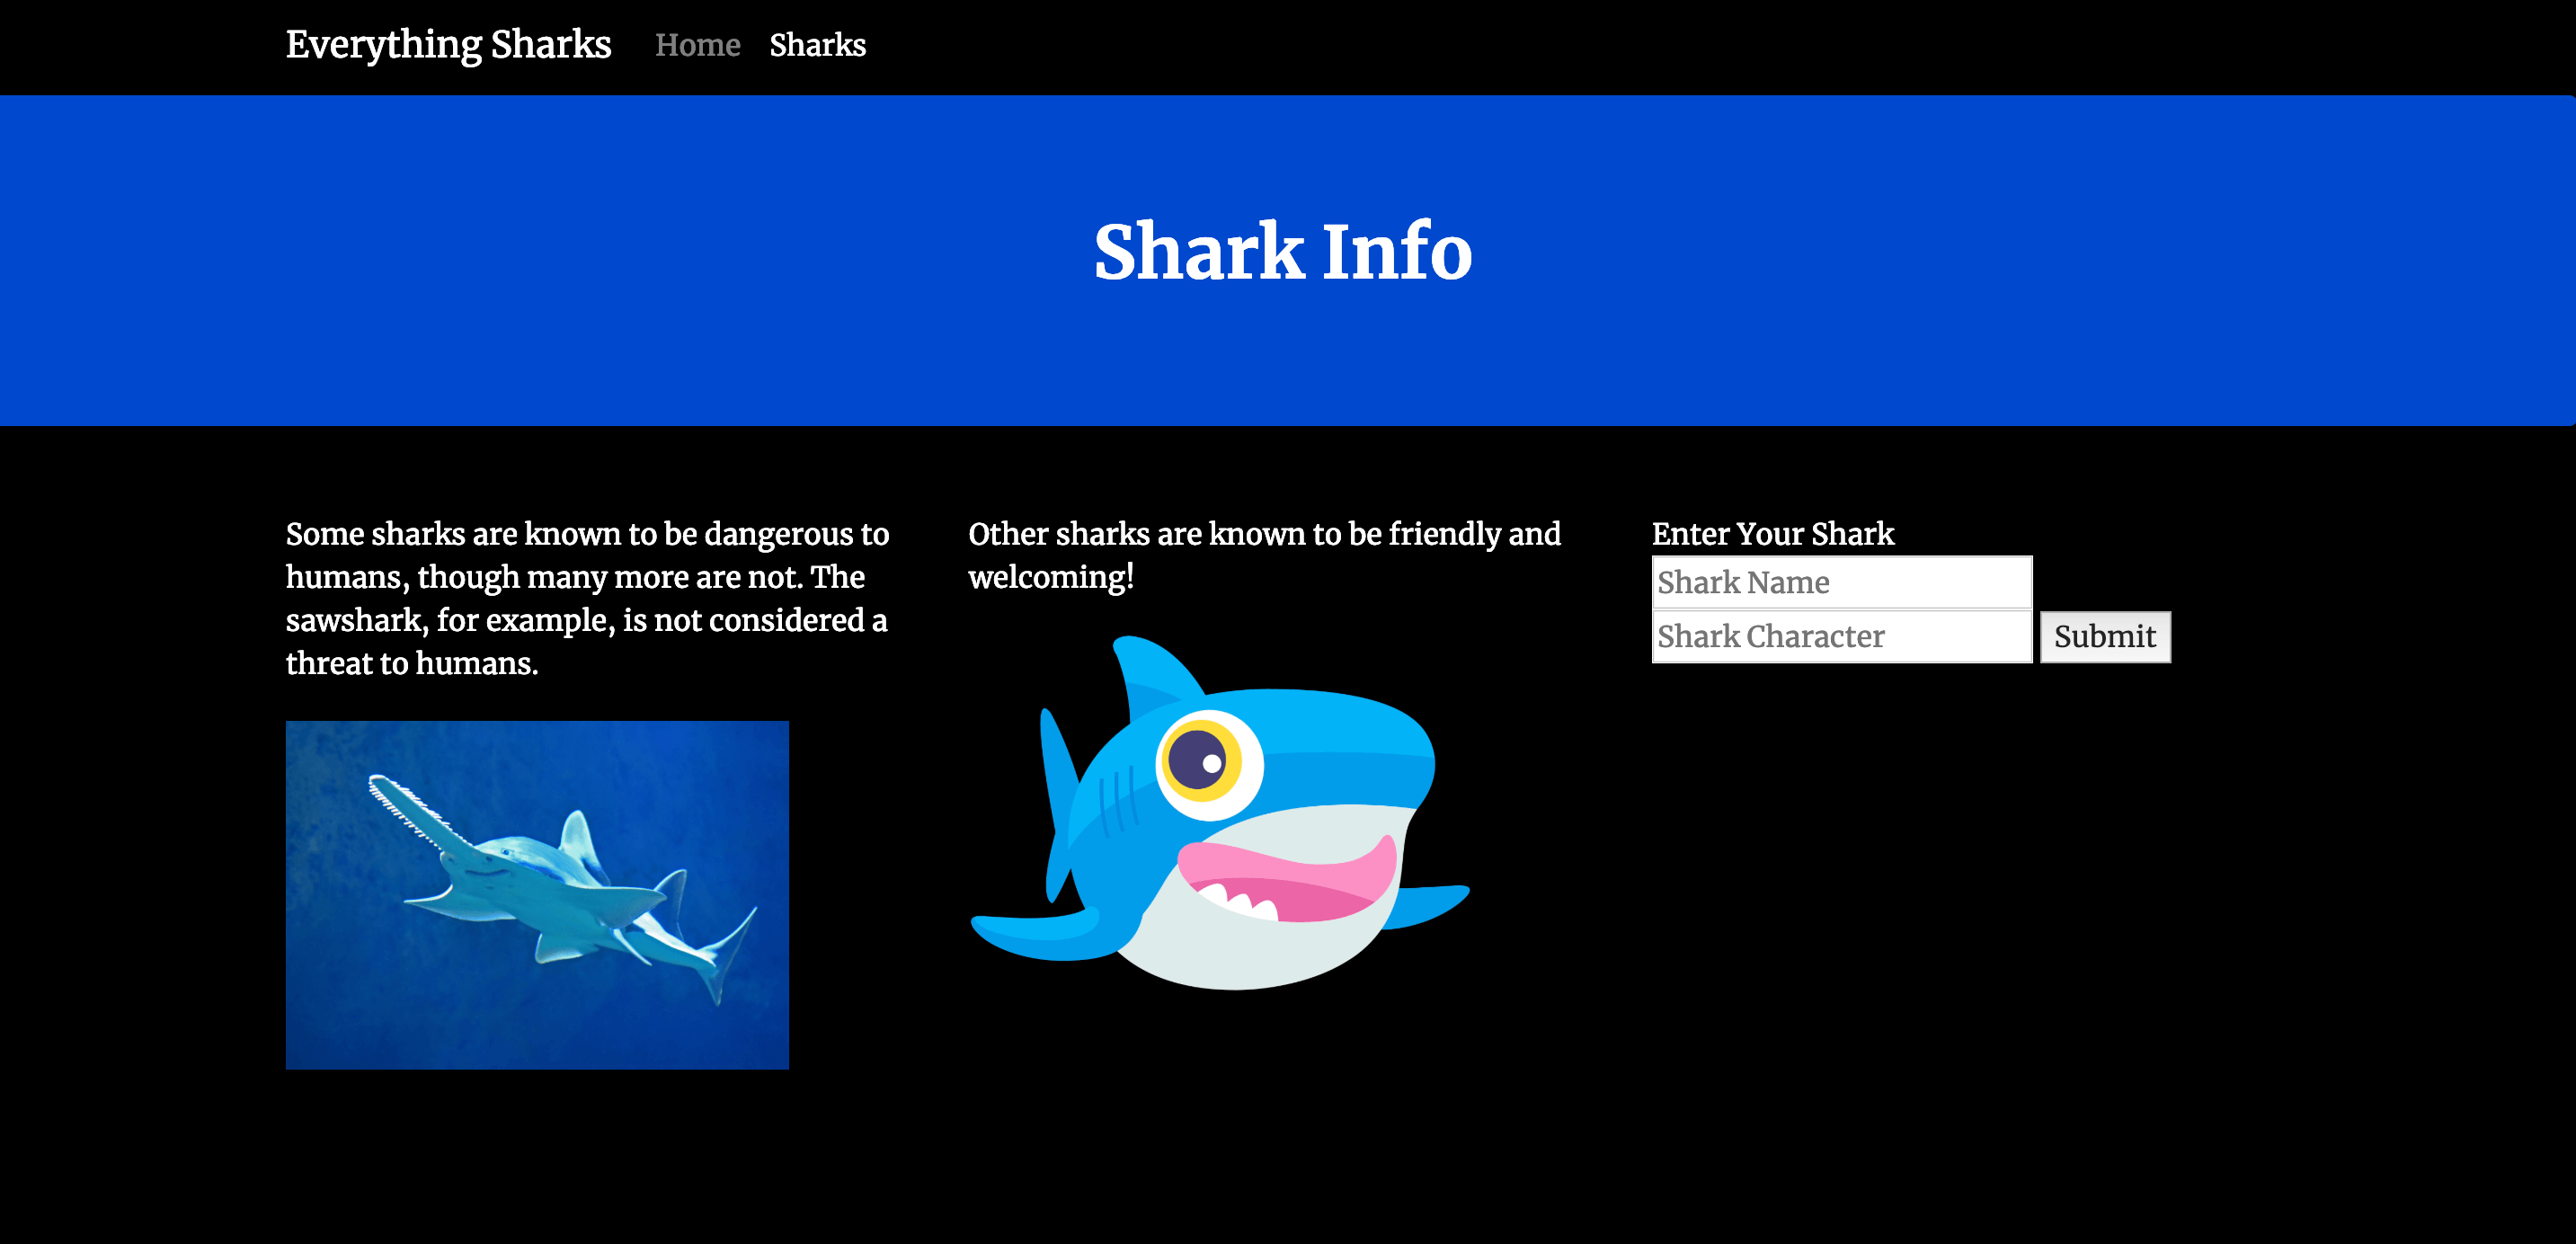 鲨鱼信息表单，您可以在其中输入鲨鱼名称和该shark